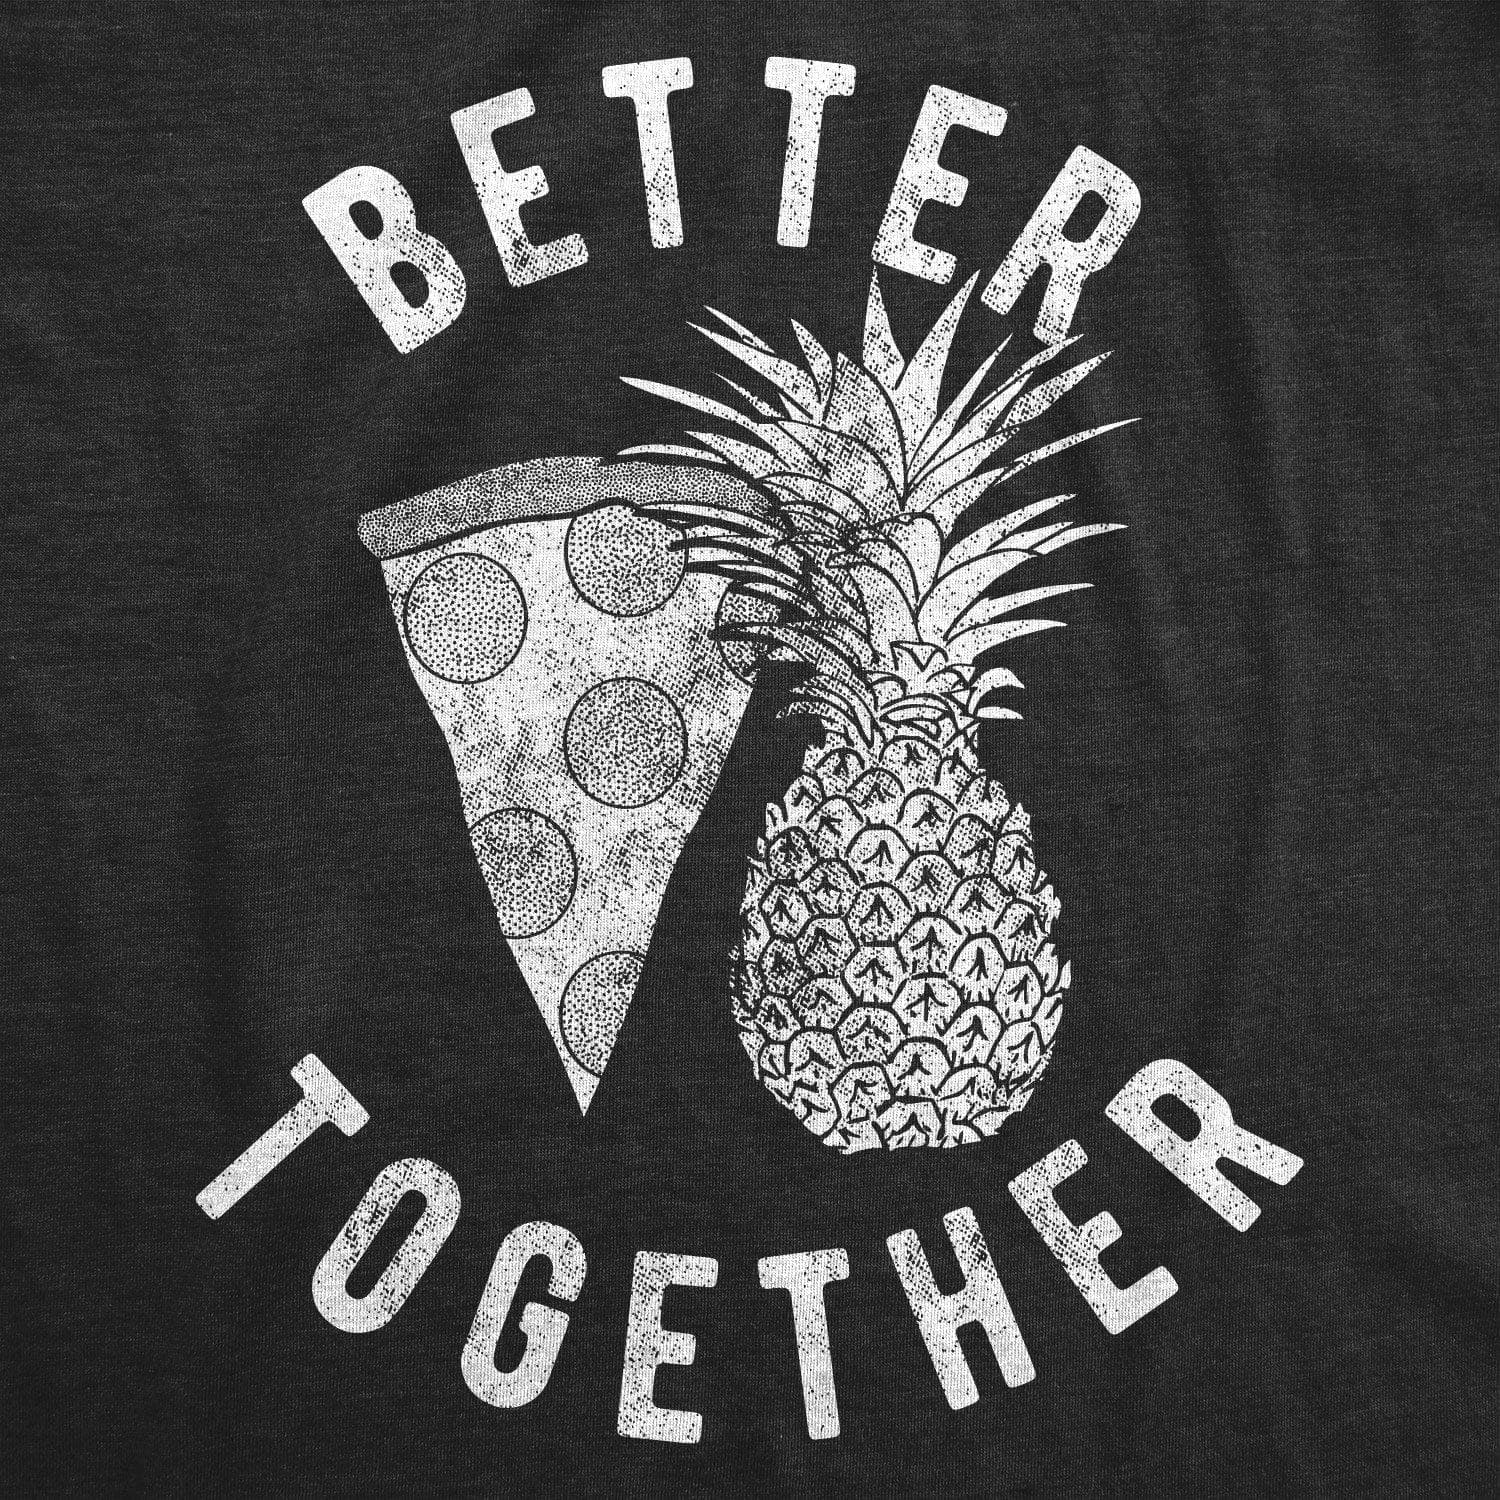 Better Together Men's Tshirt  -  Crazy Dog T-Shirts